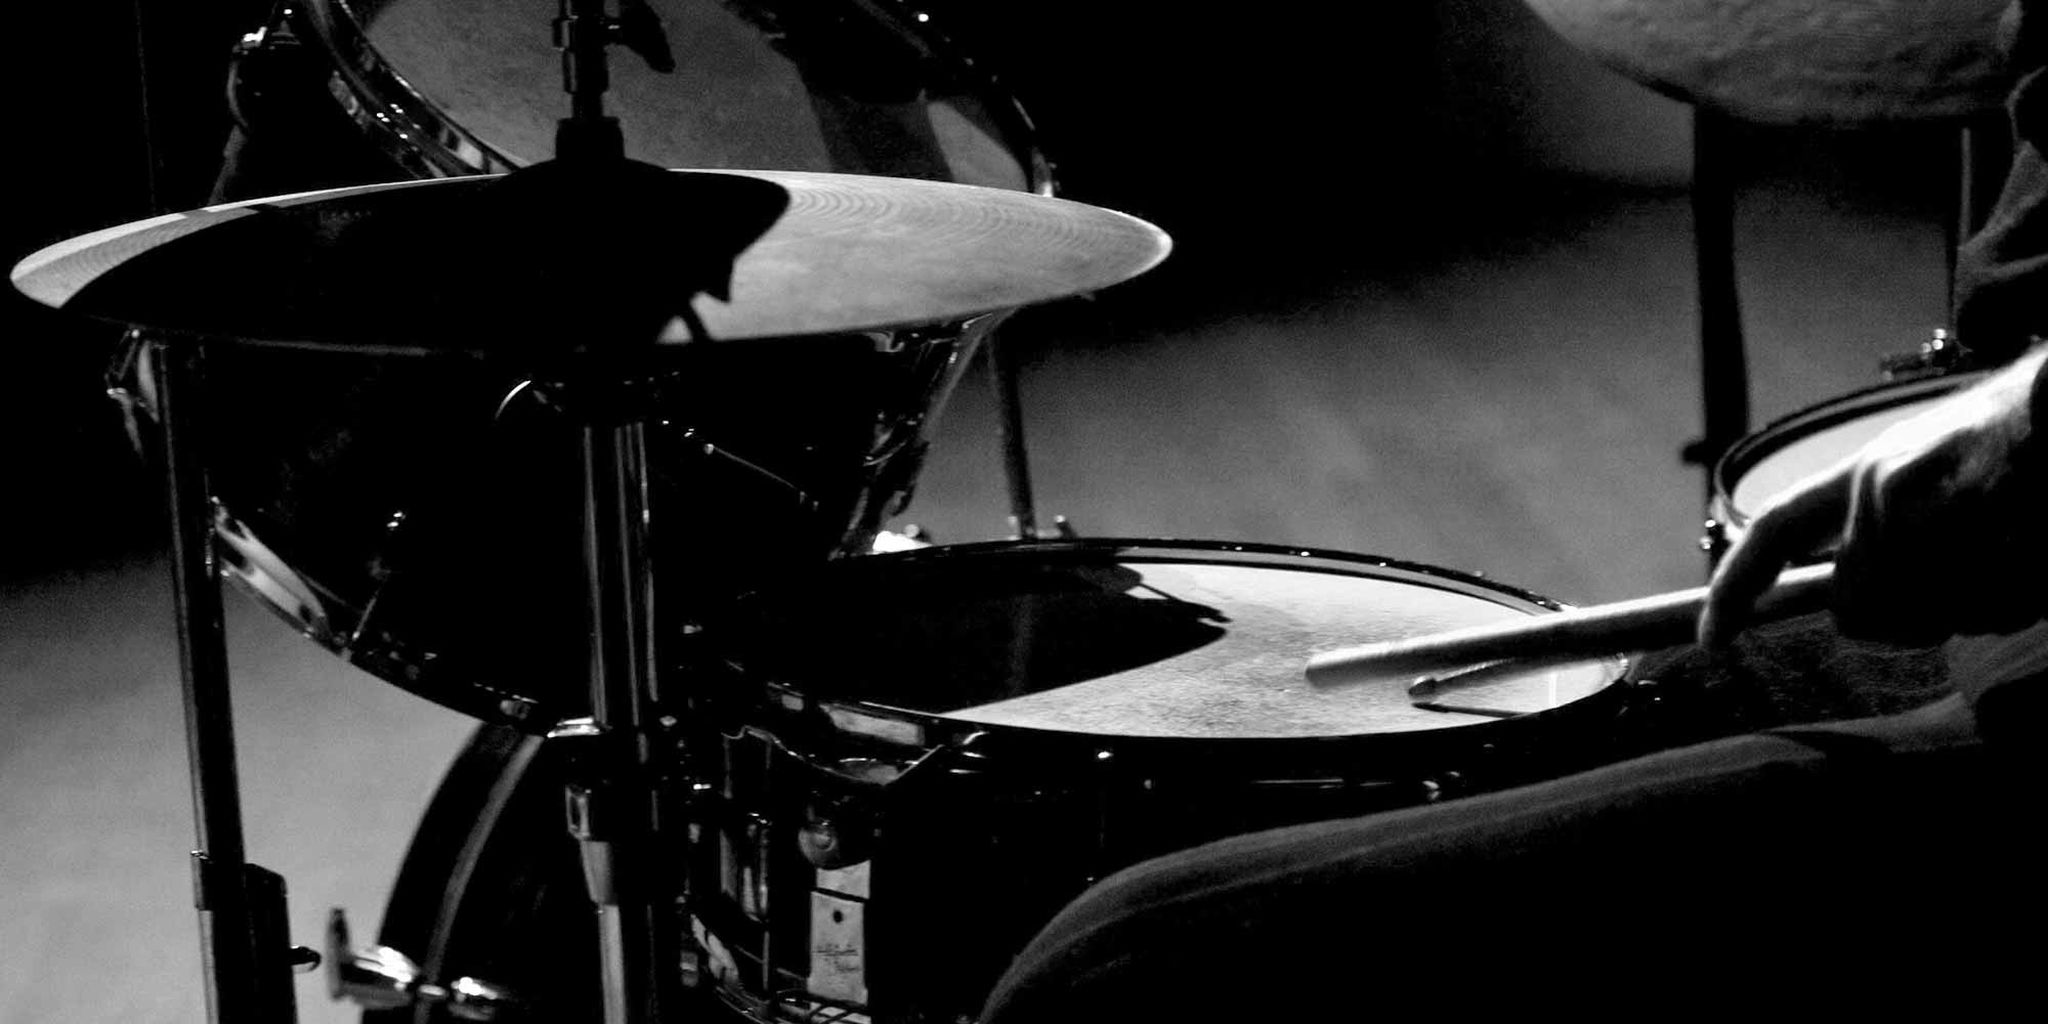 gambar drum hitam putih